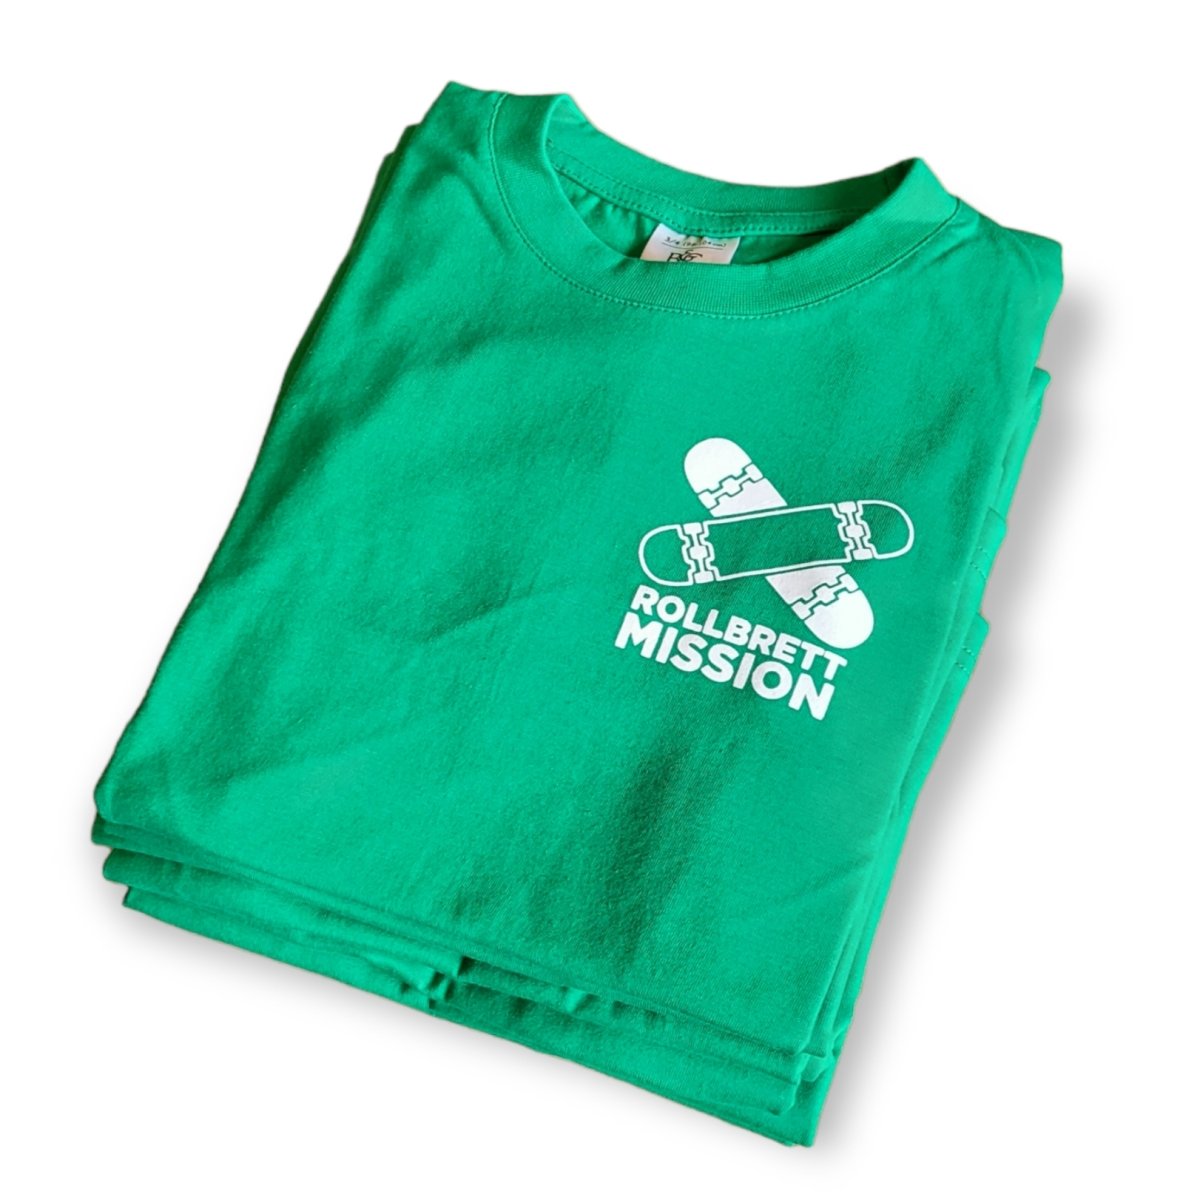 Rollbrett Mission Kids T-Shirt Mini Logo grün - Shirts & Tops - Rollbrett Mission